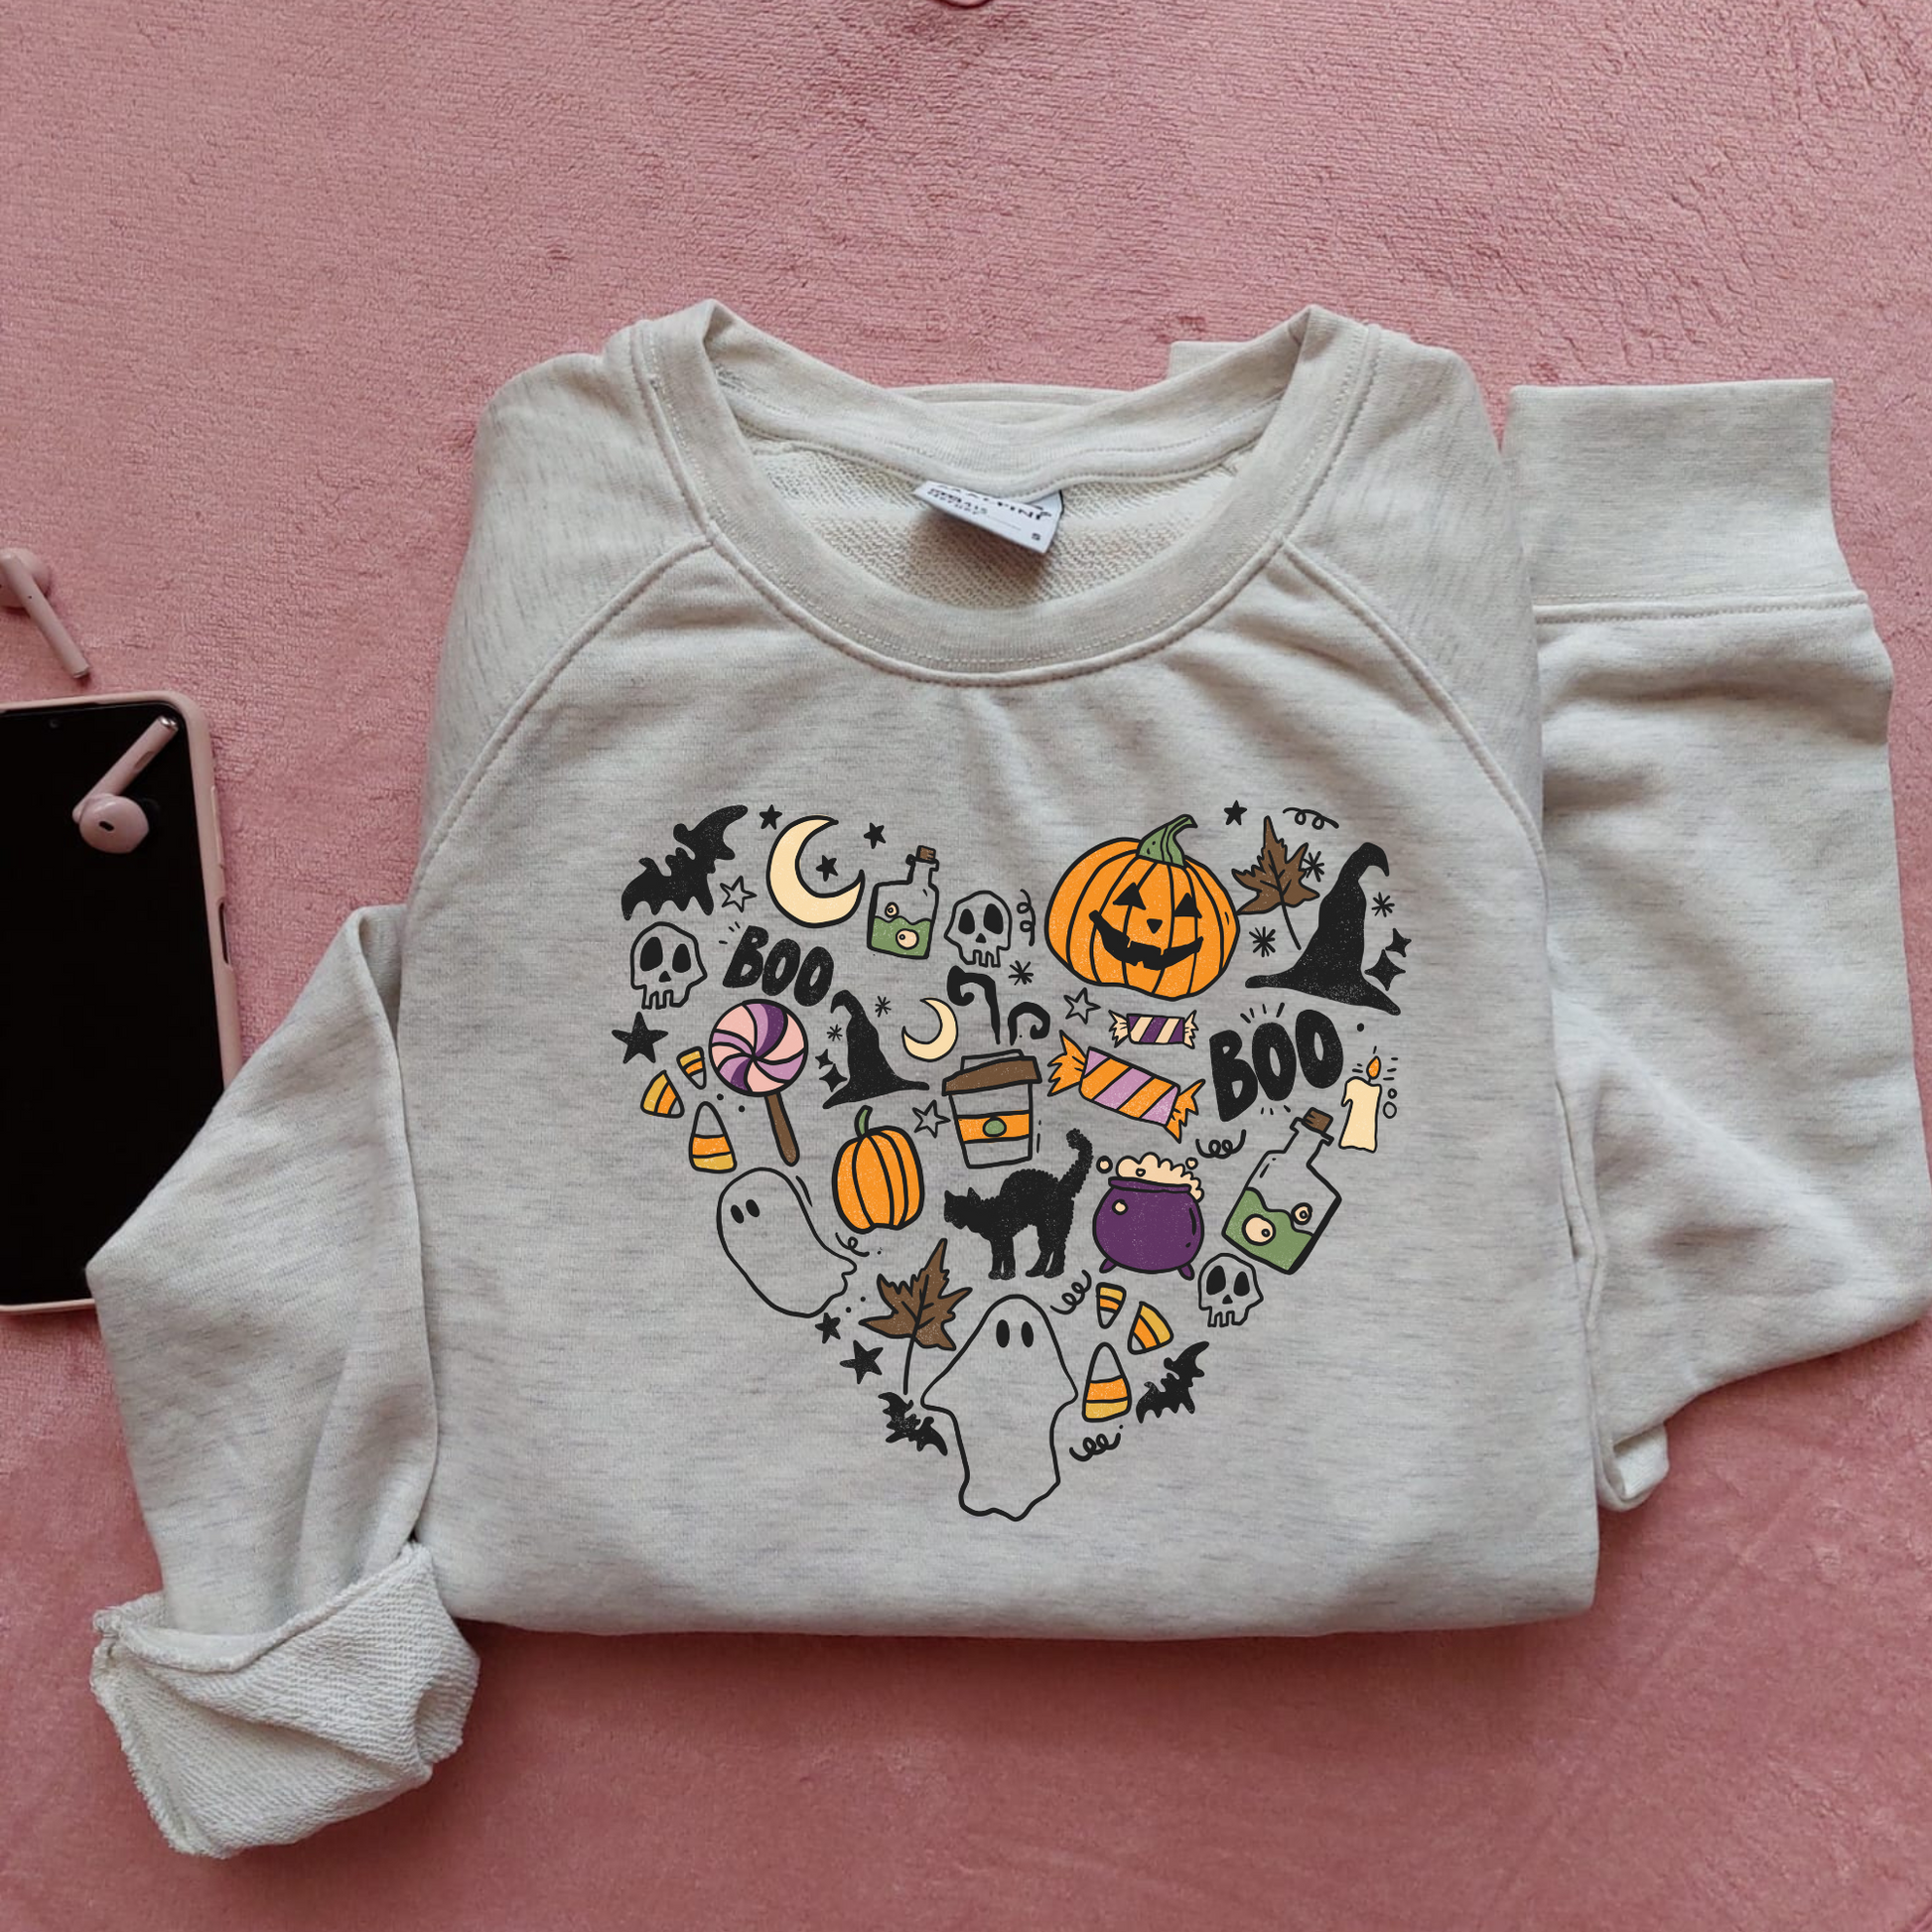 Bluza de Halloween cu o inimă creată din simboluri tematice, incluzând dovleci, lilieci și păianjeni.